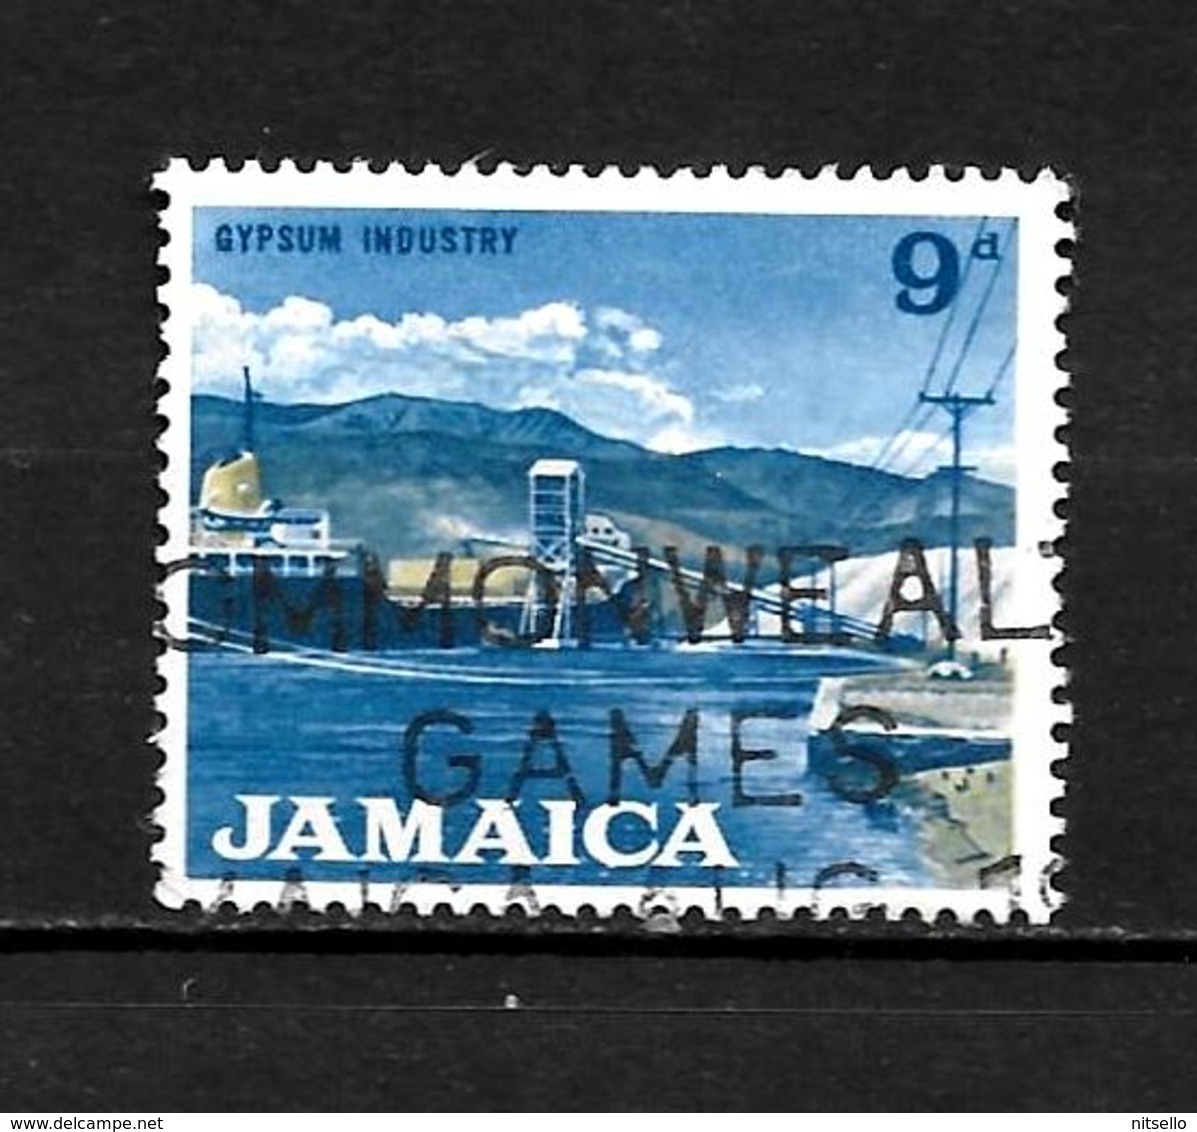 LOTE 1991  ///    JAMAICA    ¡¡¡ OFERTA - LIQUIDATION !!! JE LIQUIDE !!! - Jamaica (1962-...)